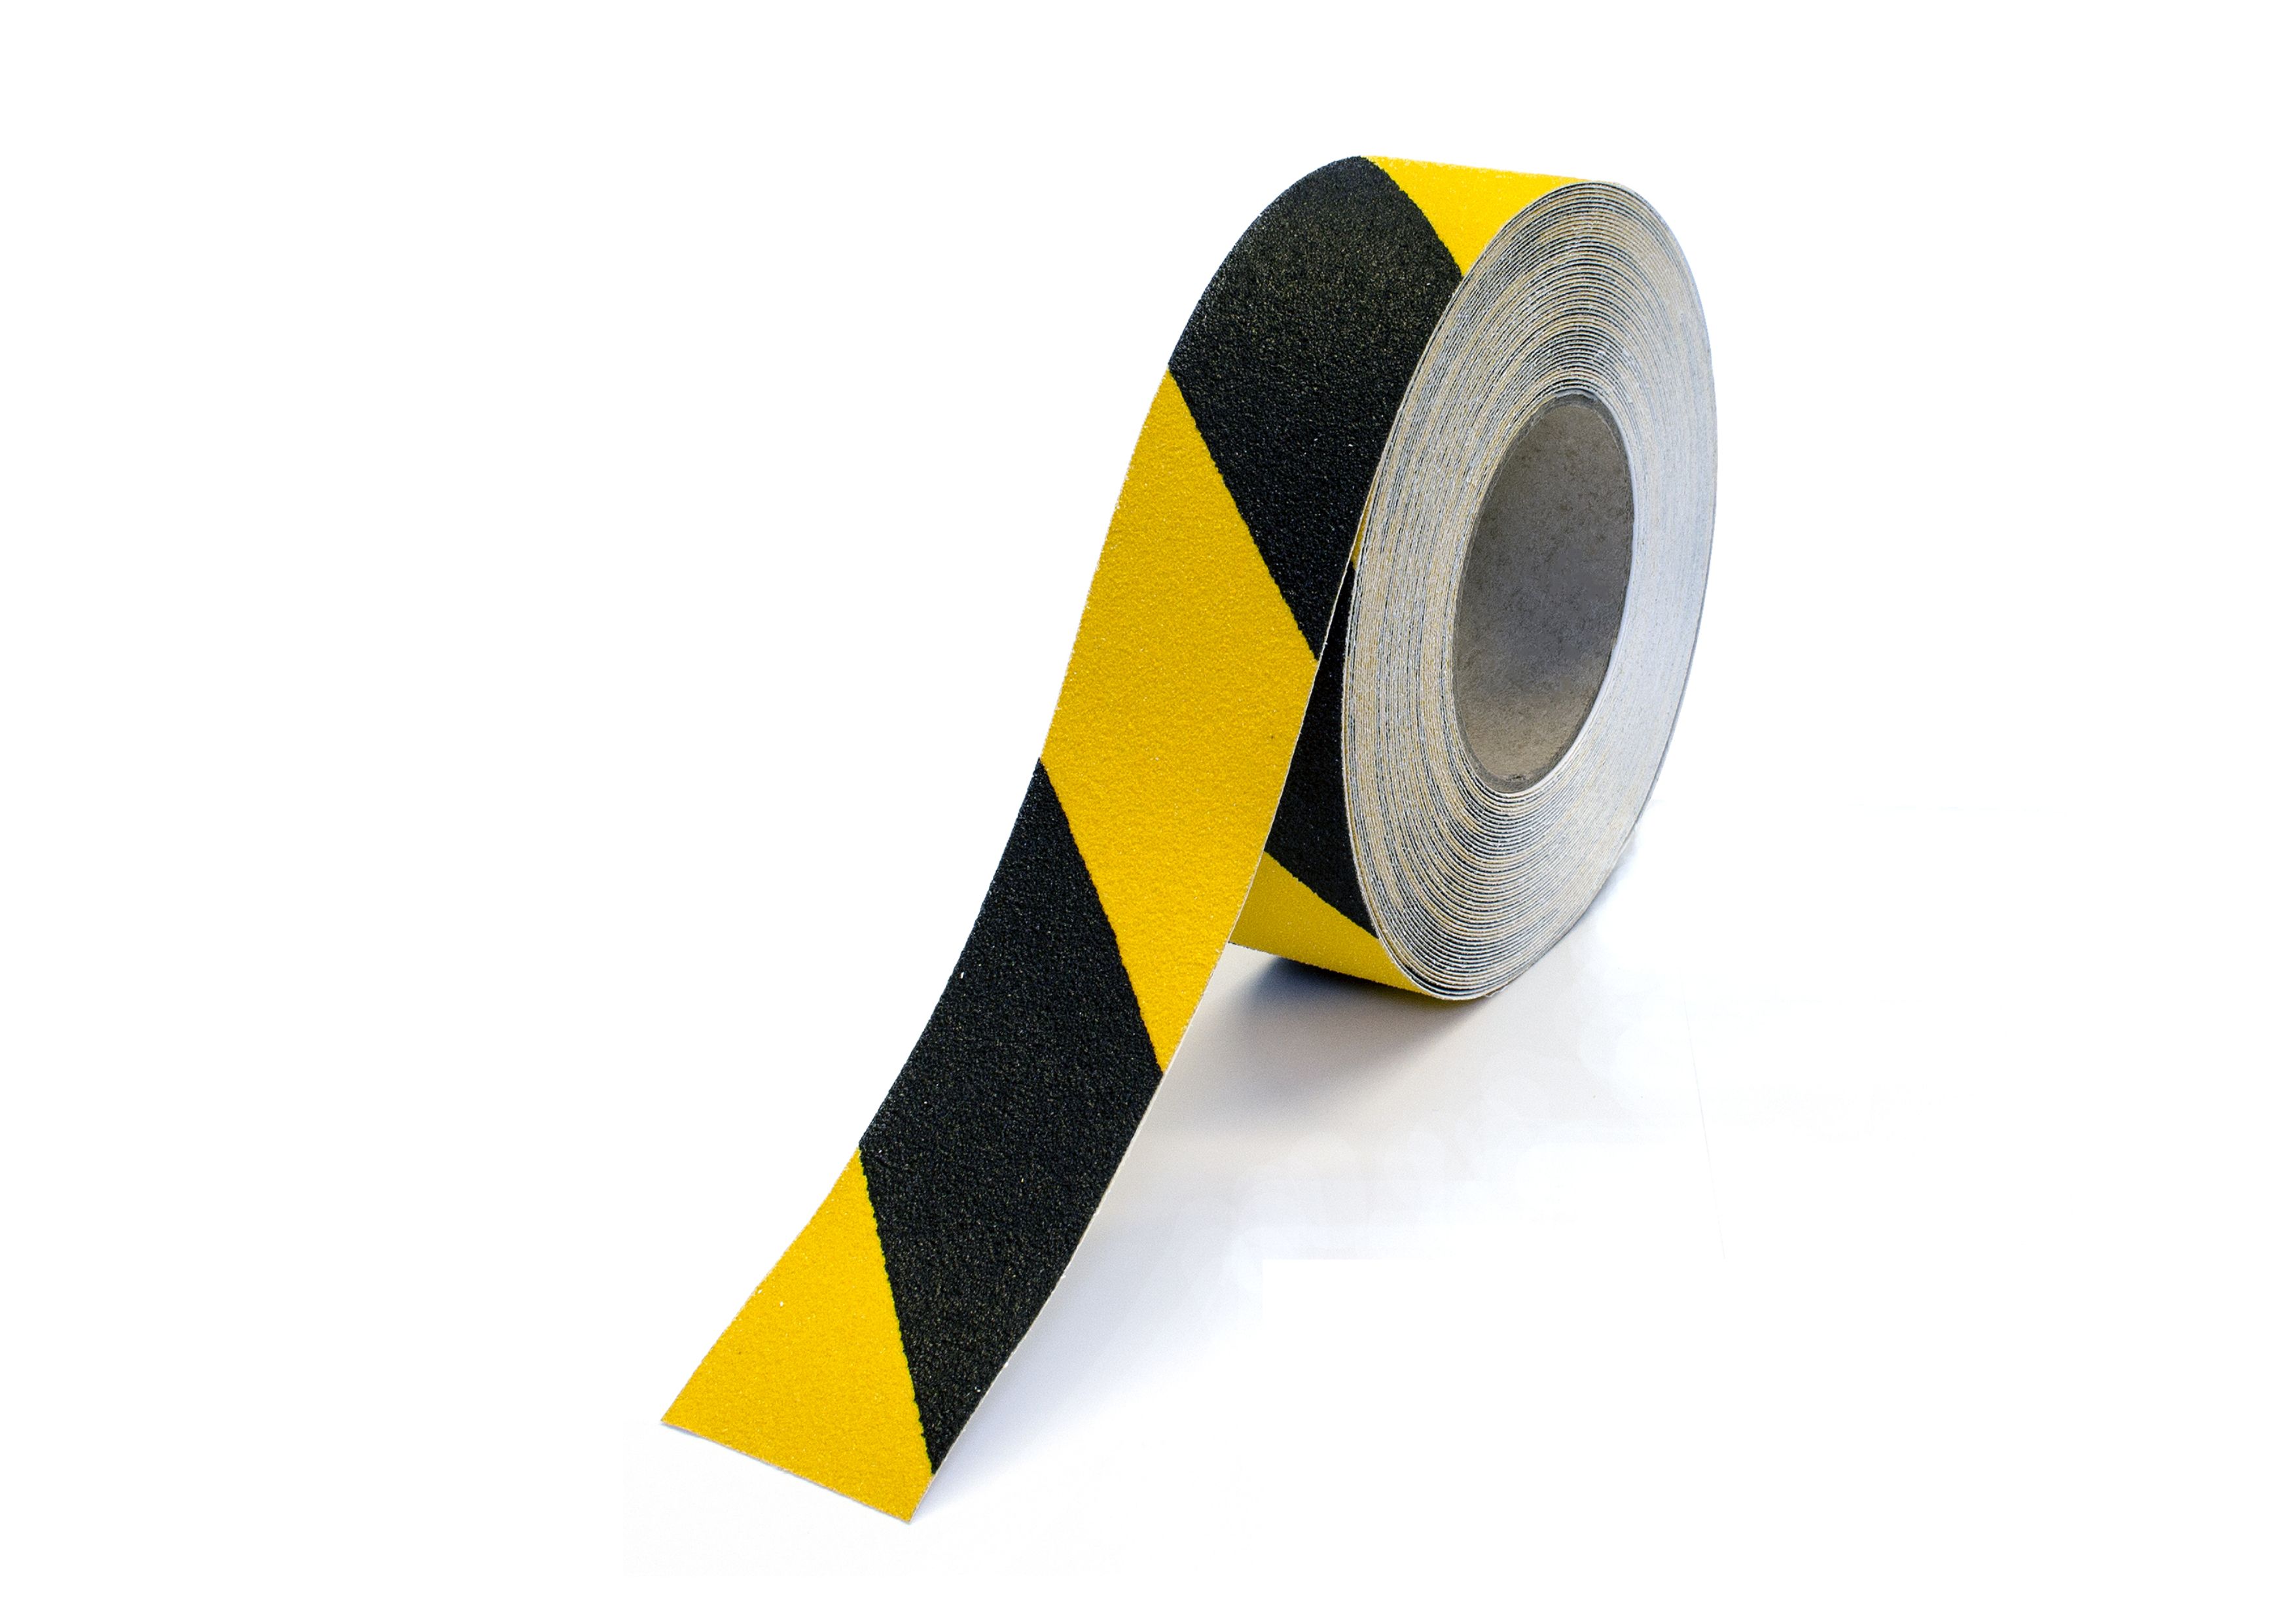 Modellbeispiel: Antirutsch-Bodenmarkierungsband 'Line Plan', schwarz/gelb, Breite 50 mm, Länge 18 m  (Art. 41566.0001)